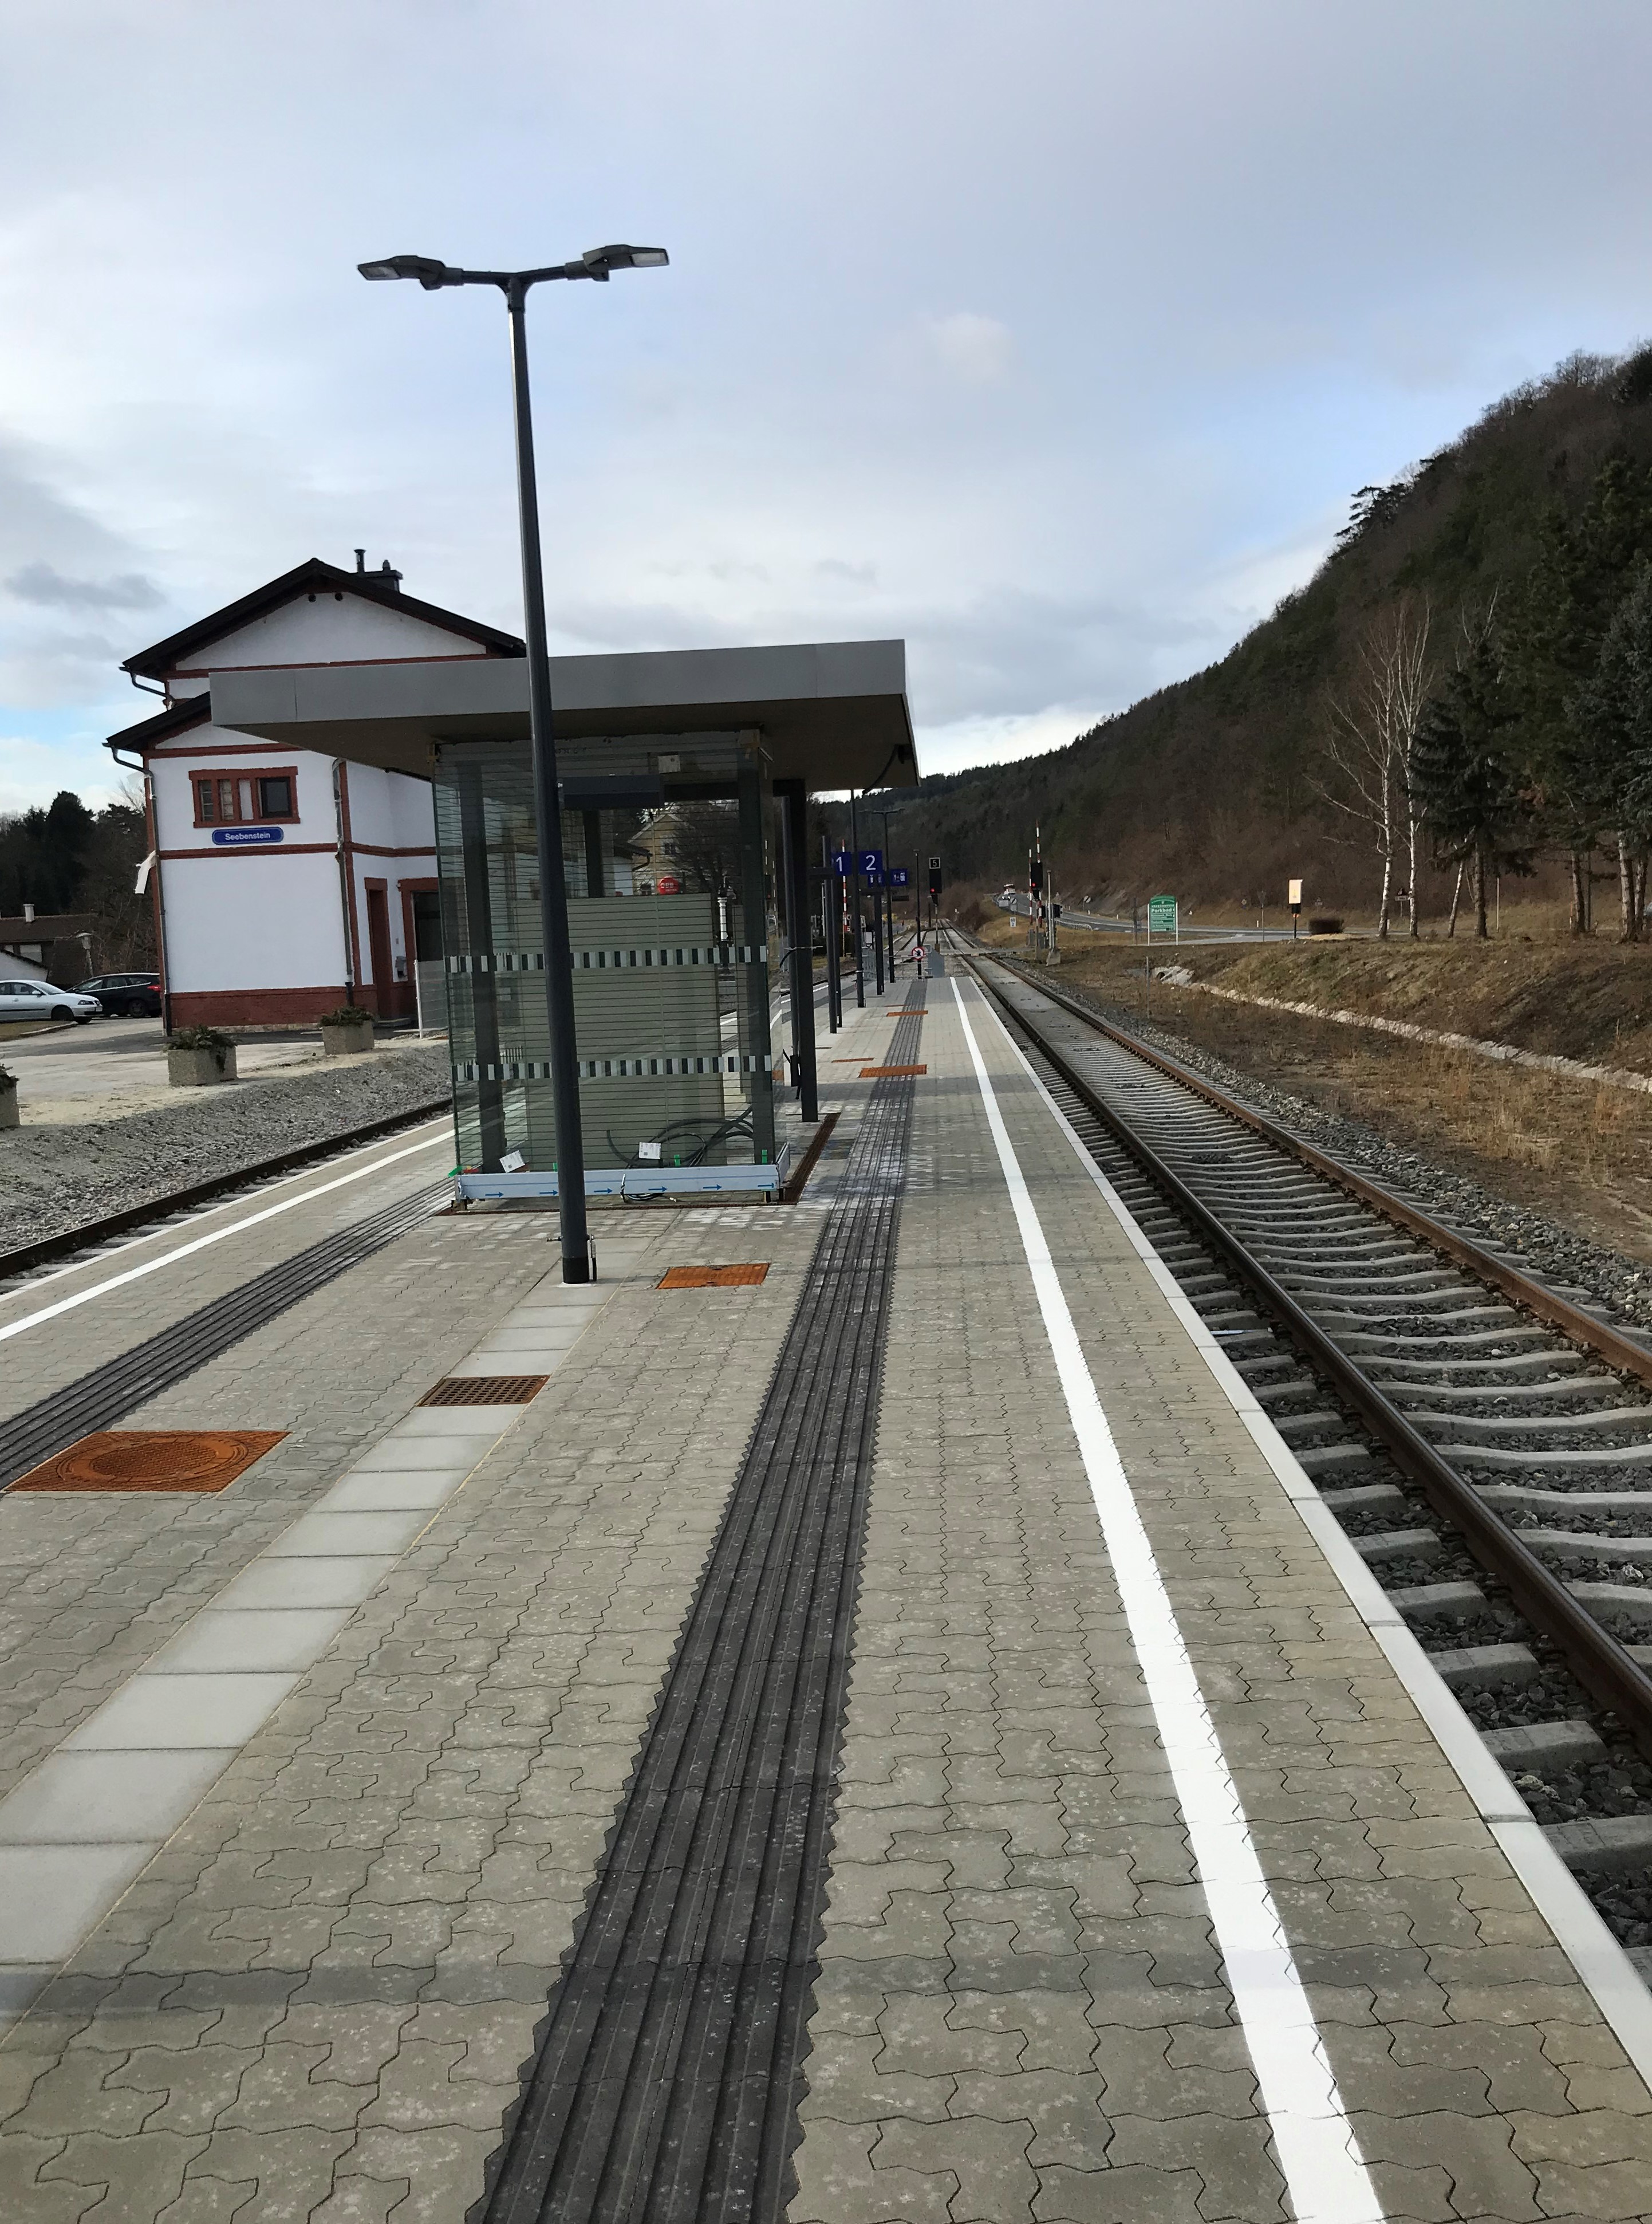 Umbau Bahnhof Seebenstein - Civiele bouwkunde